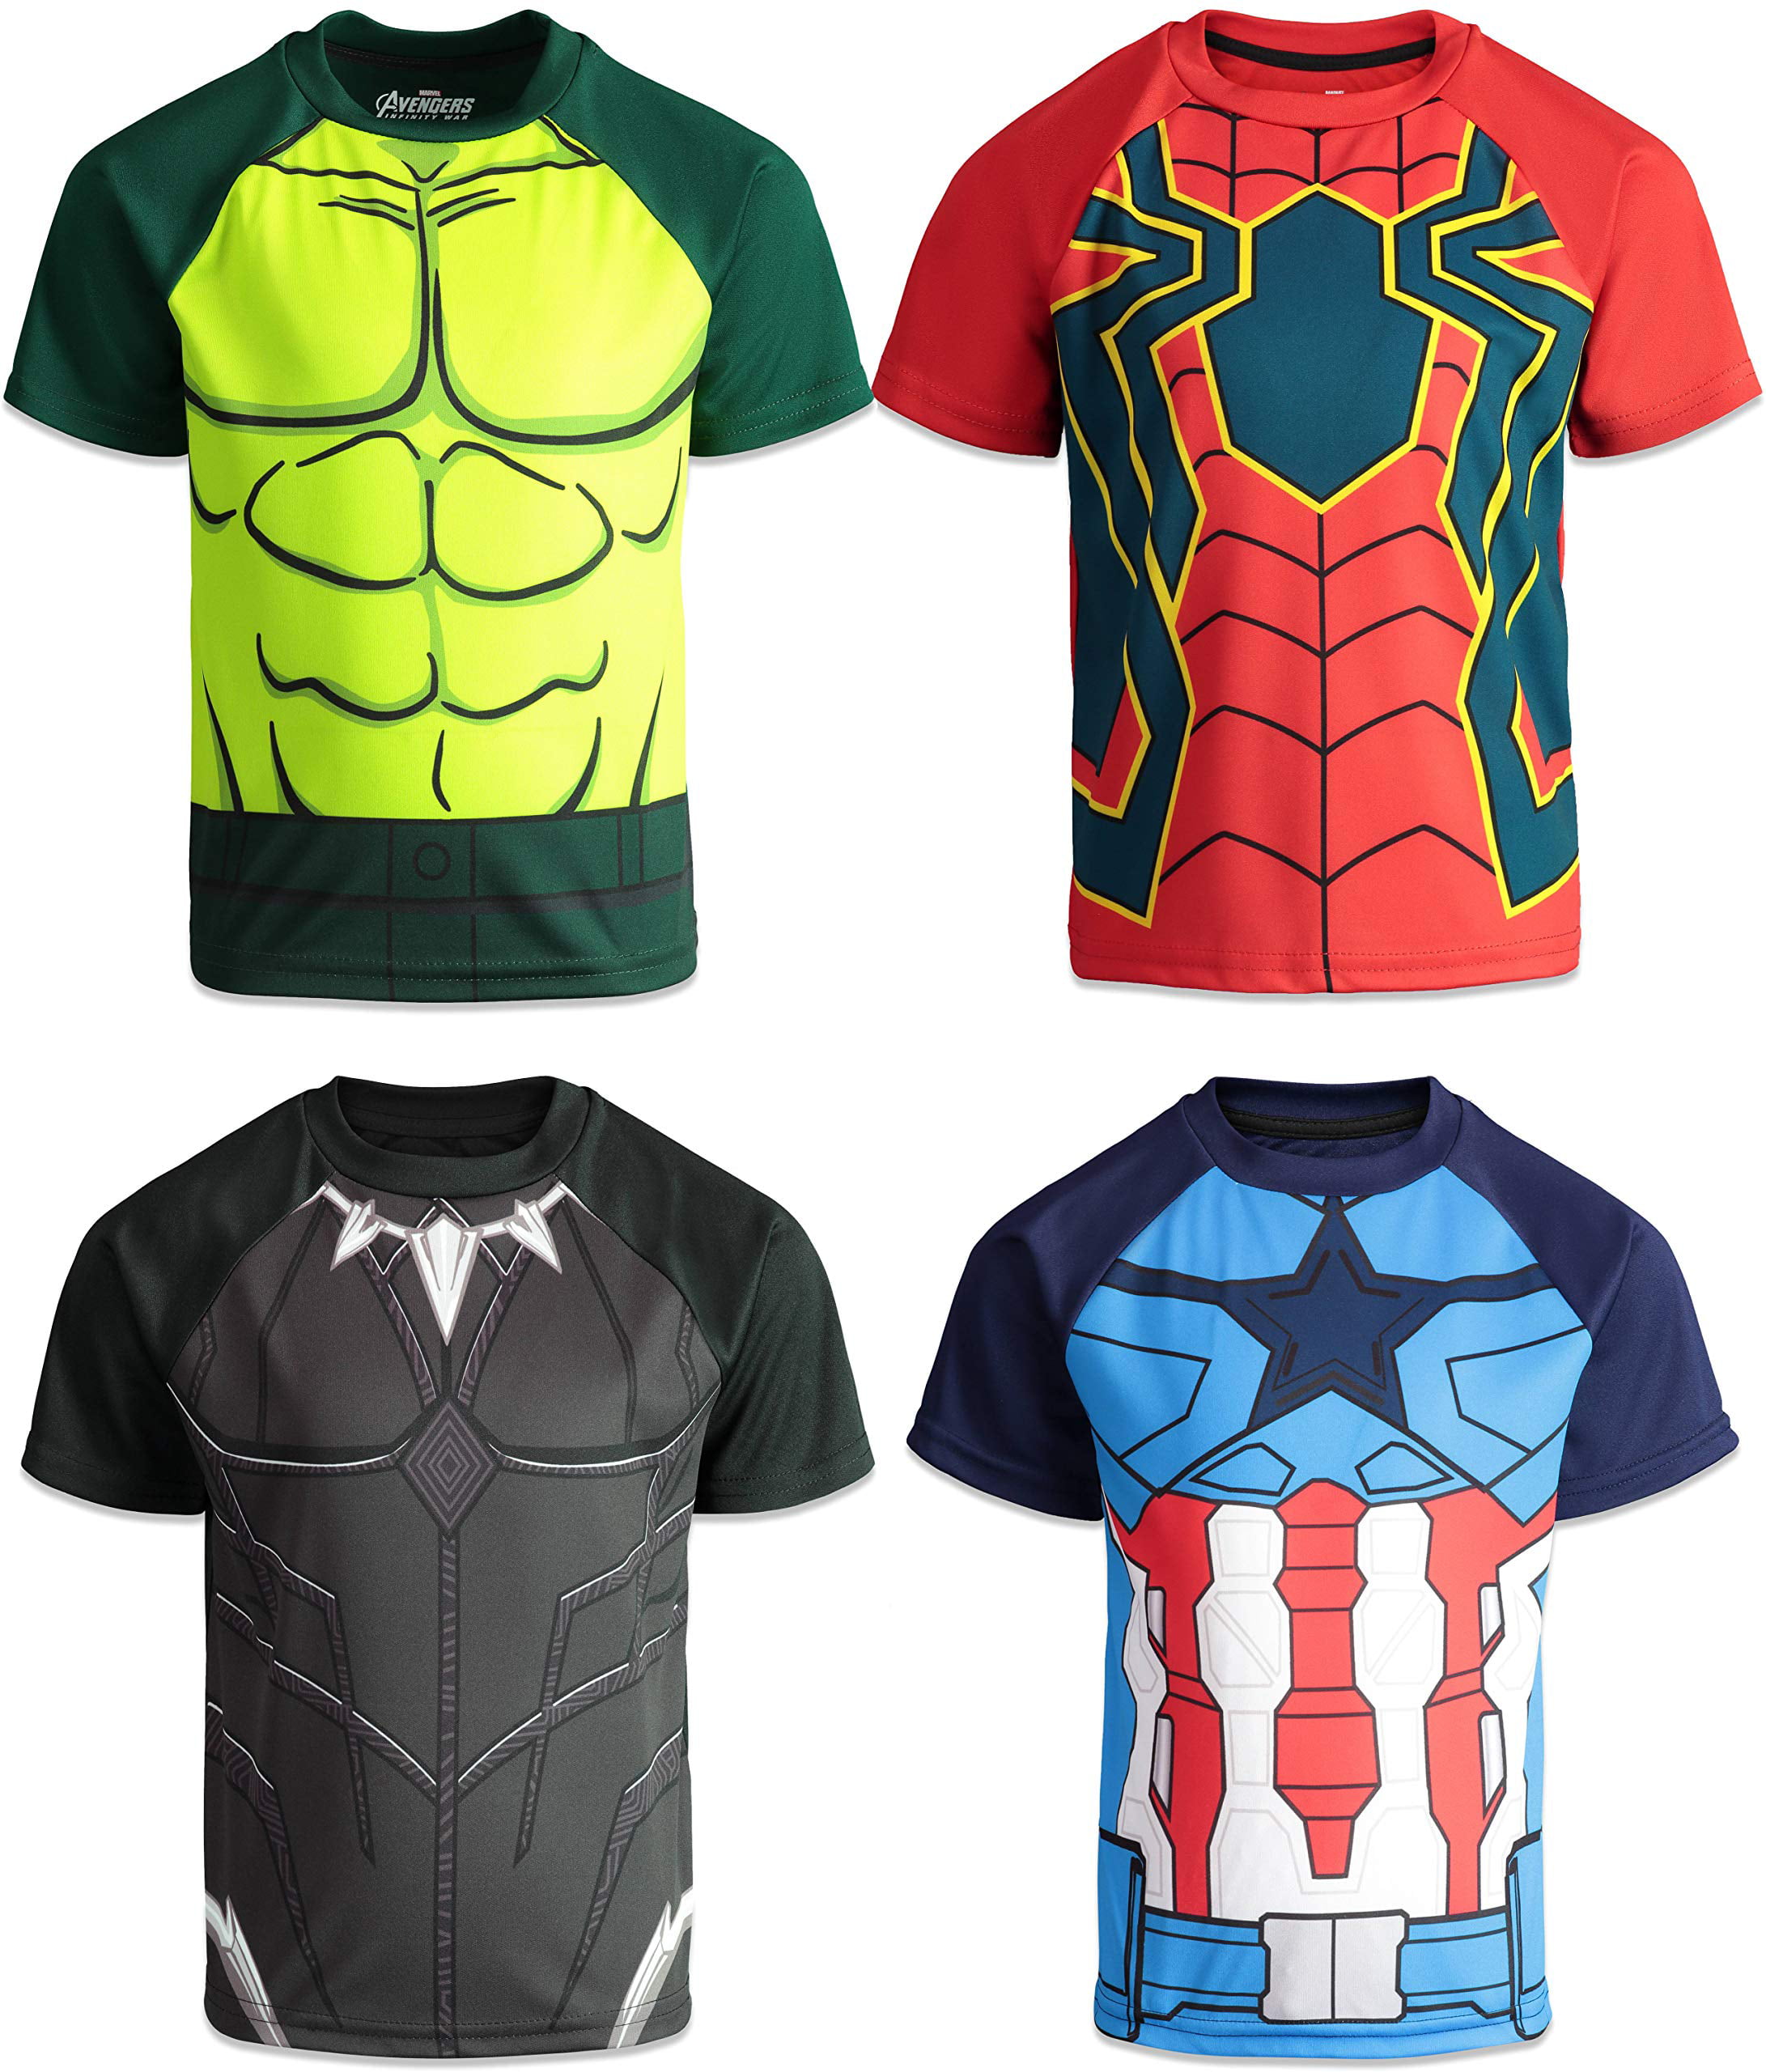 Marvel Avengers Boys Short Sleeve T-Shirt Hulk Ironman Captain America Spiderman 